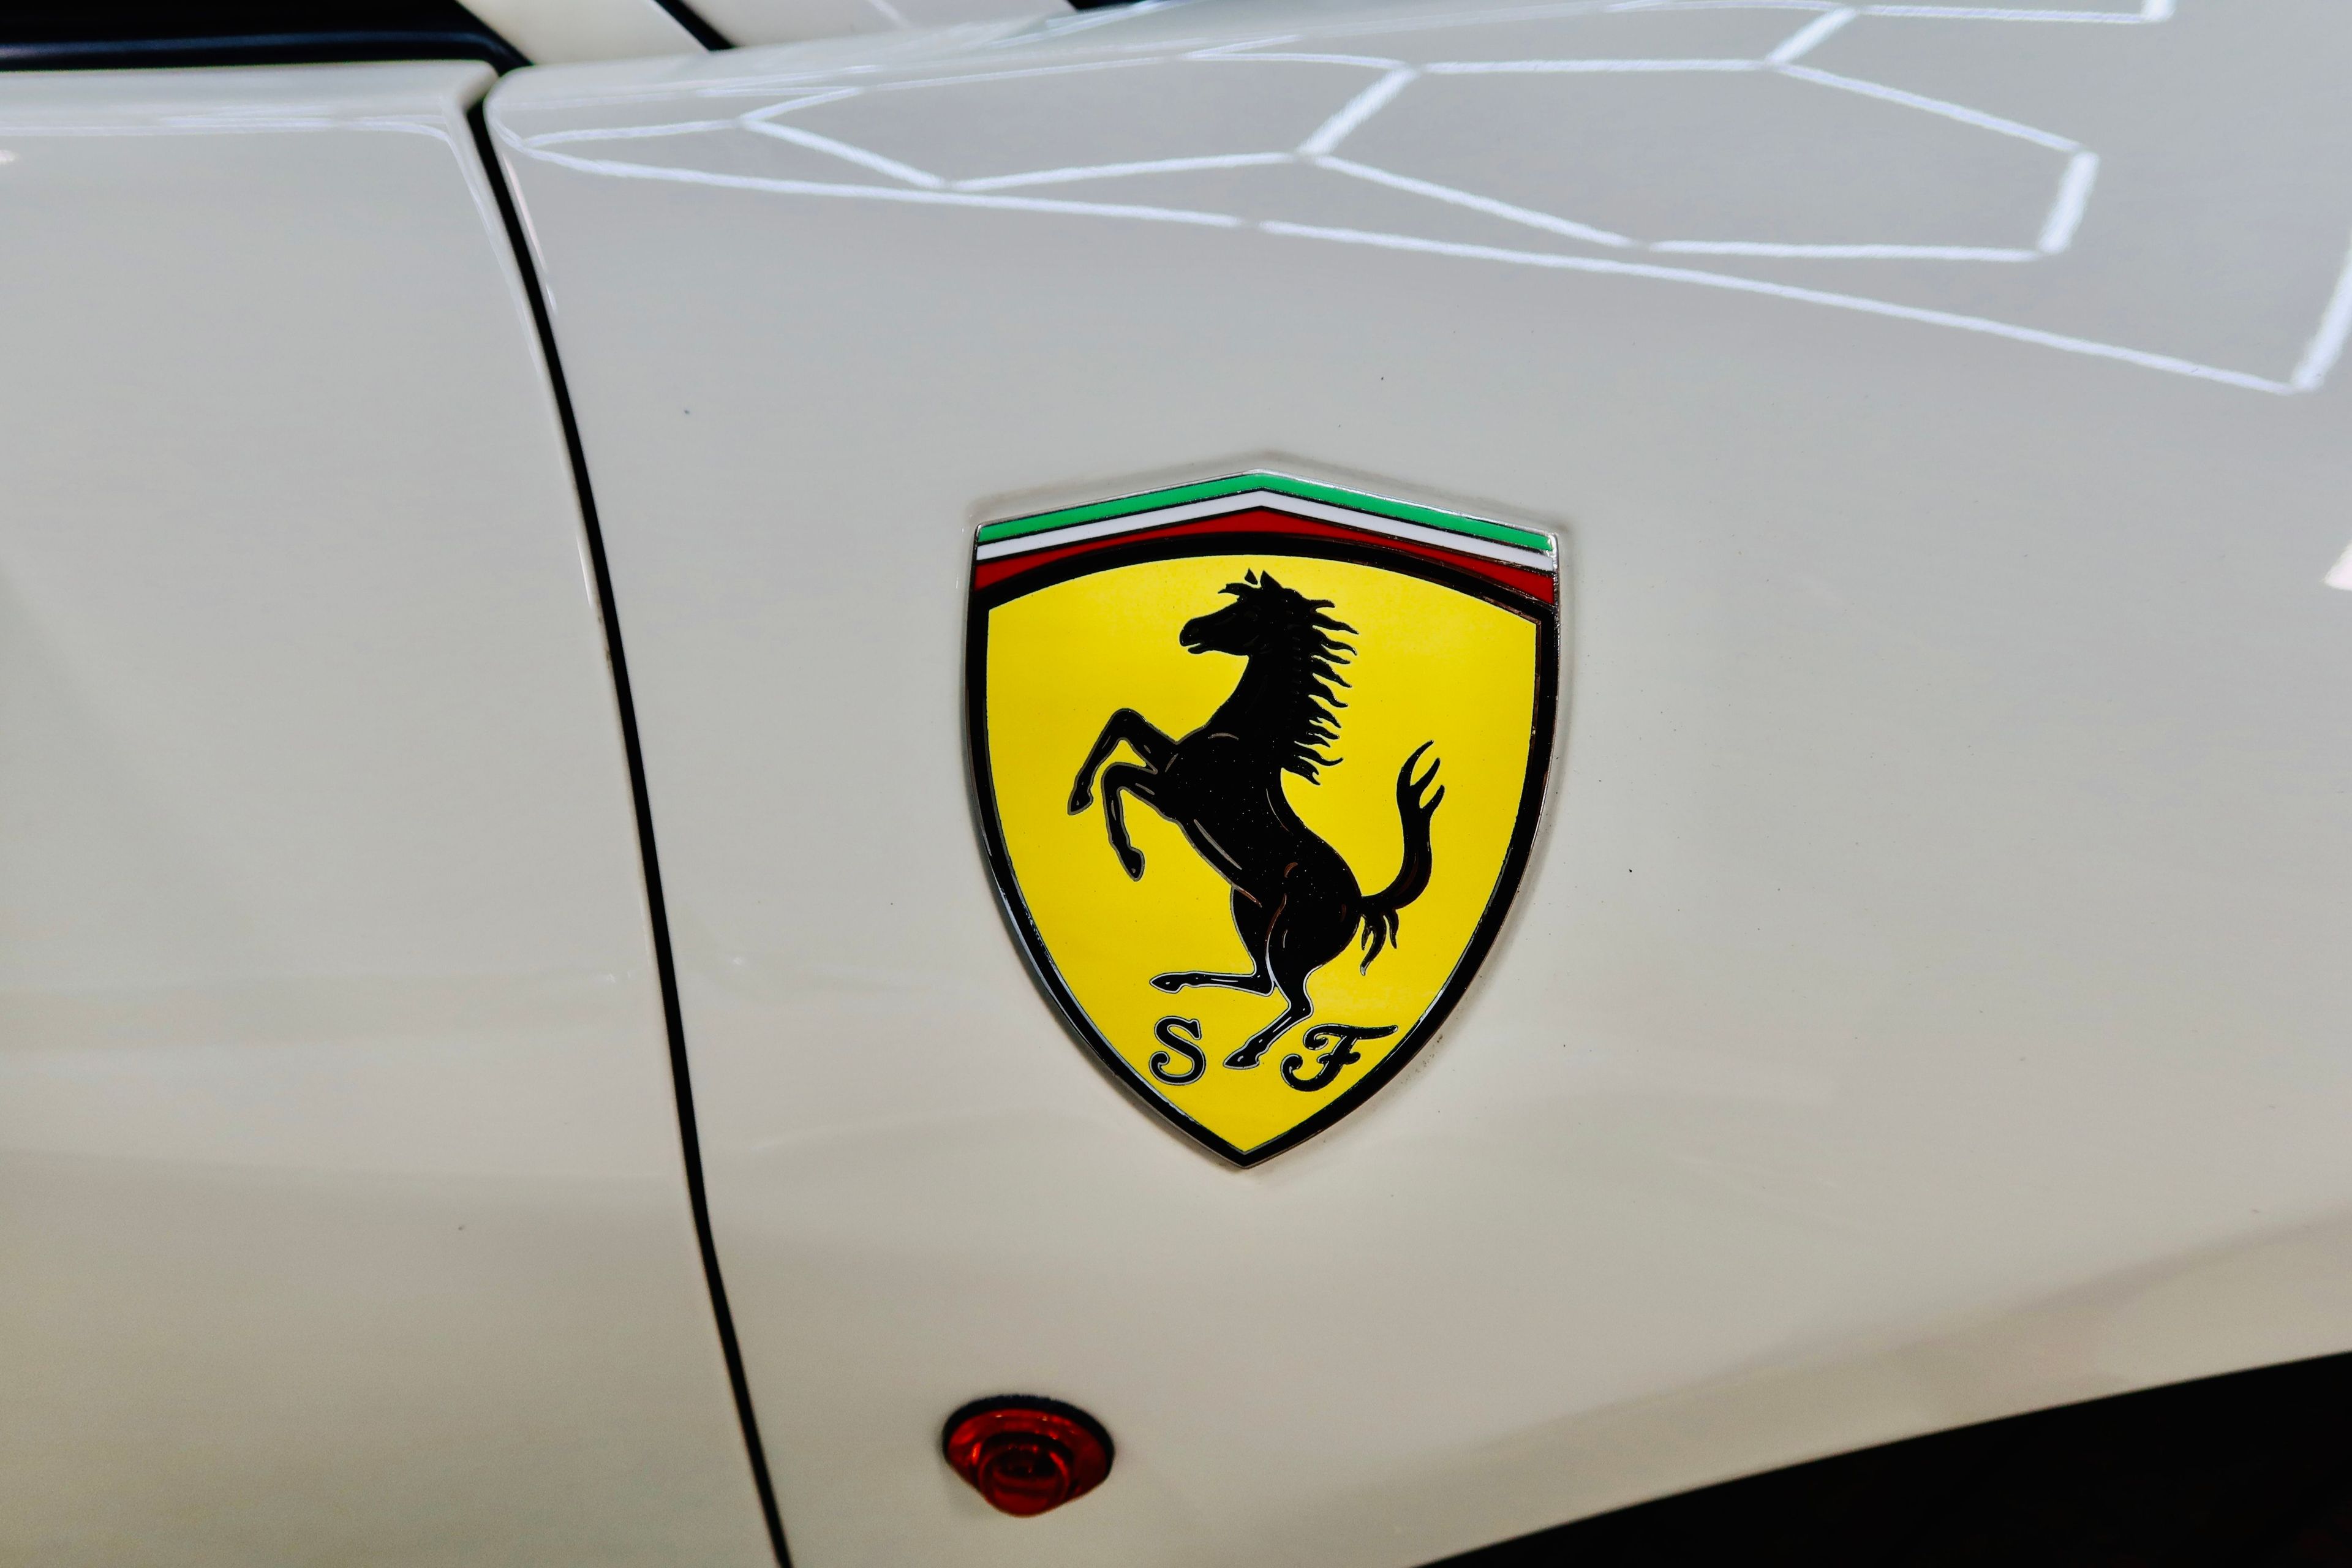 Ferrari 458 Italia 2011